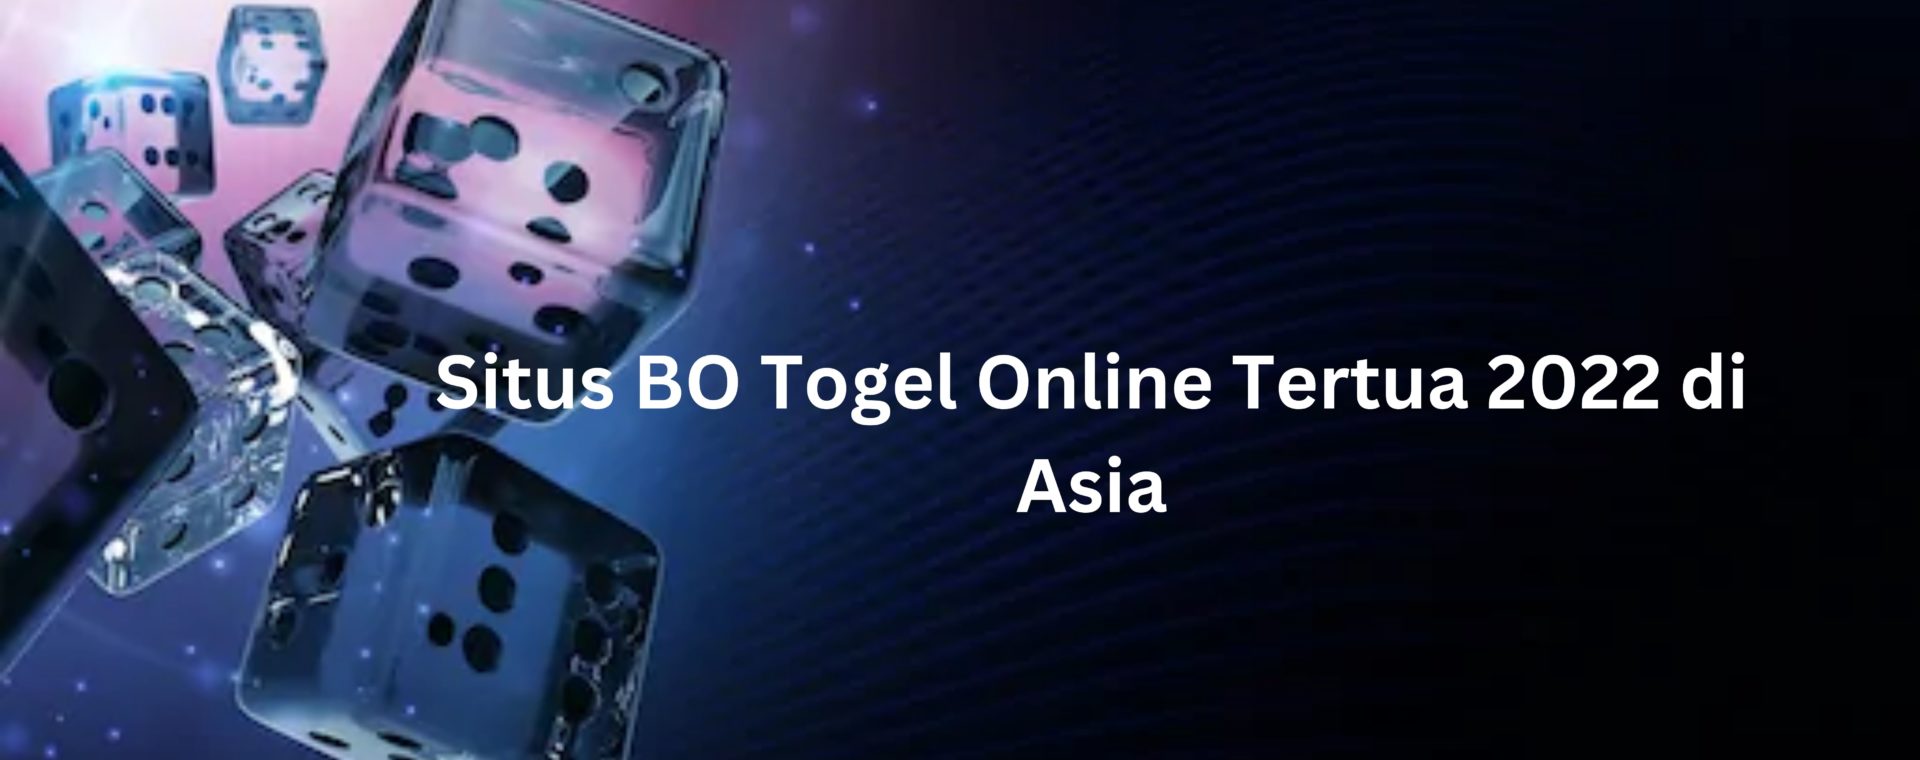 Situs BO Togel Online Tertua 2022 di Asia